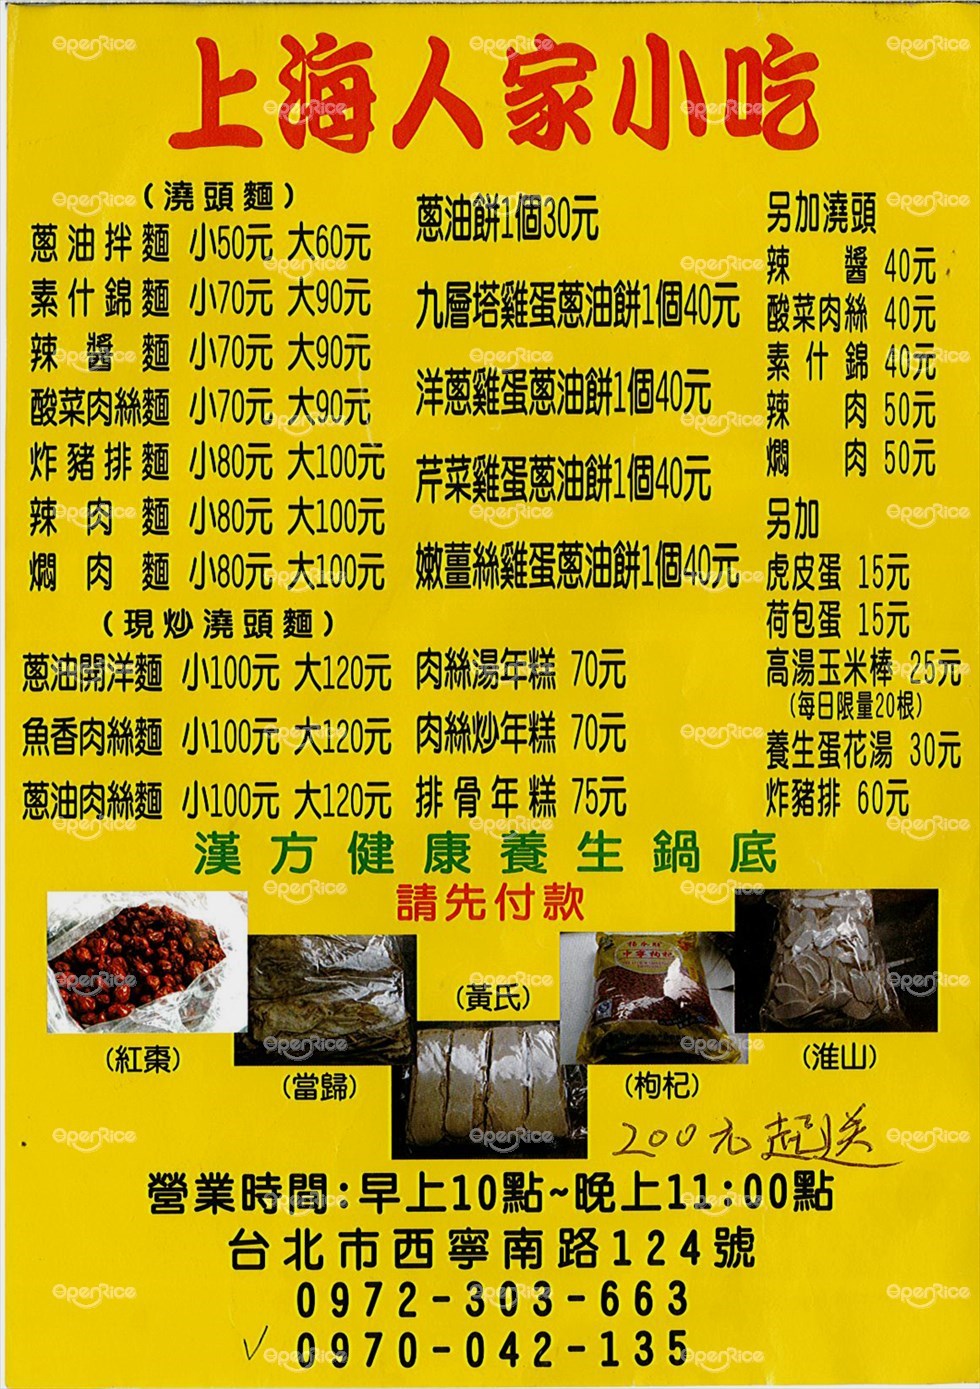 上海人家菜单图片